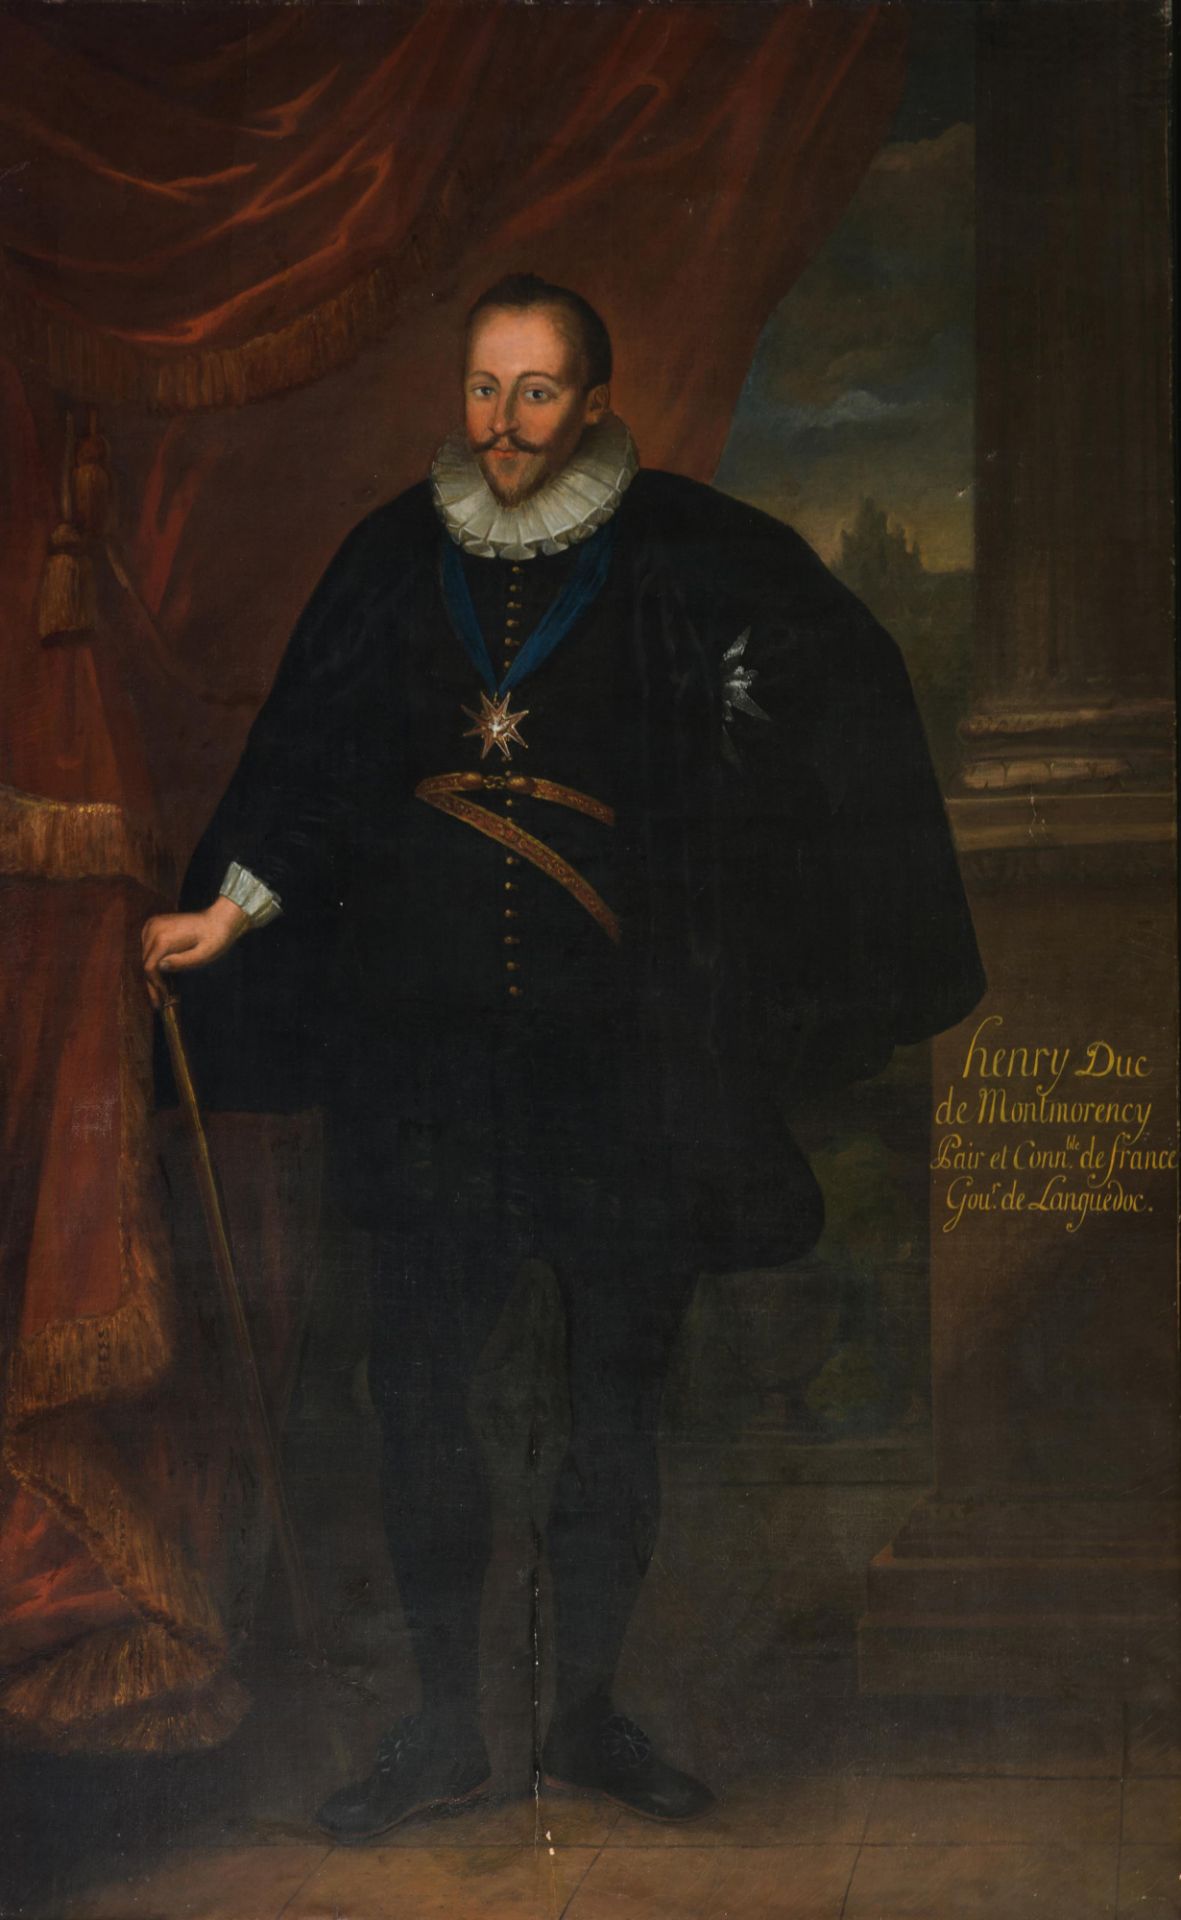 The full-length portrait of 'Henry Duc de Montmorency, Pair et Connétable de France, Gouvereur de La